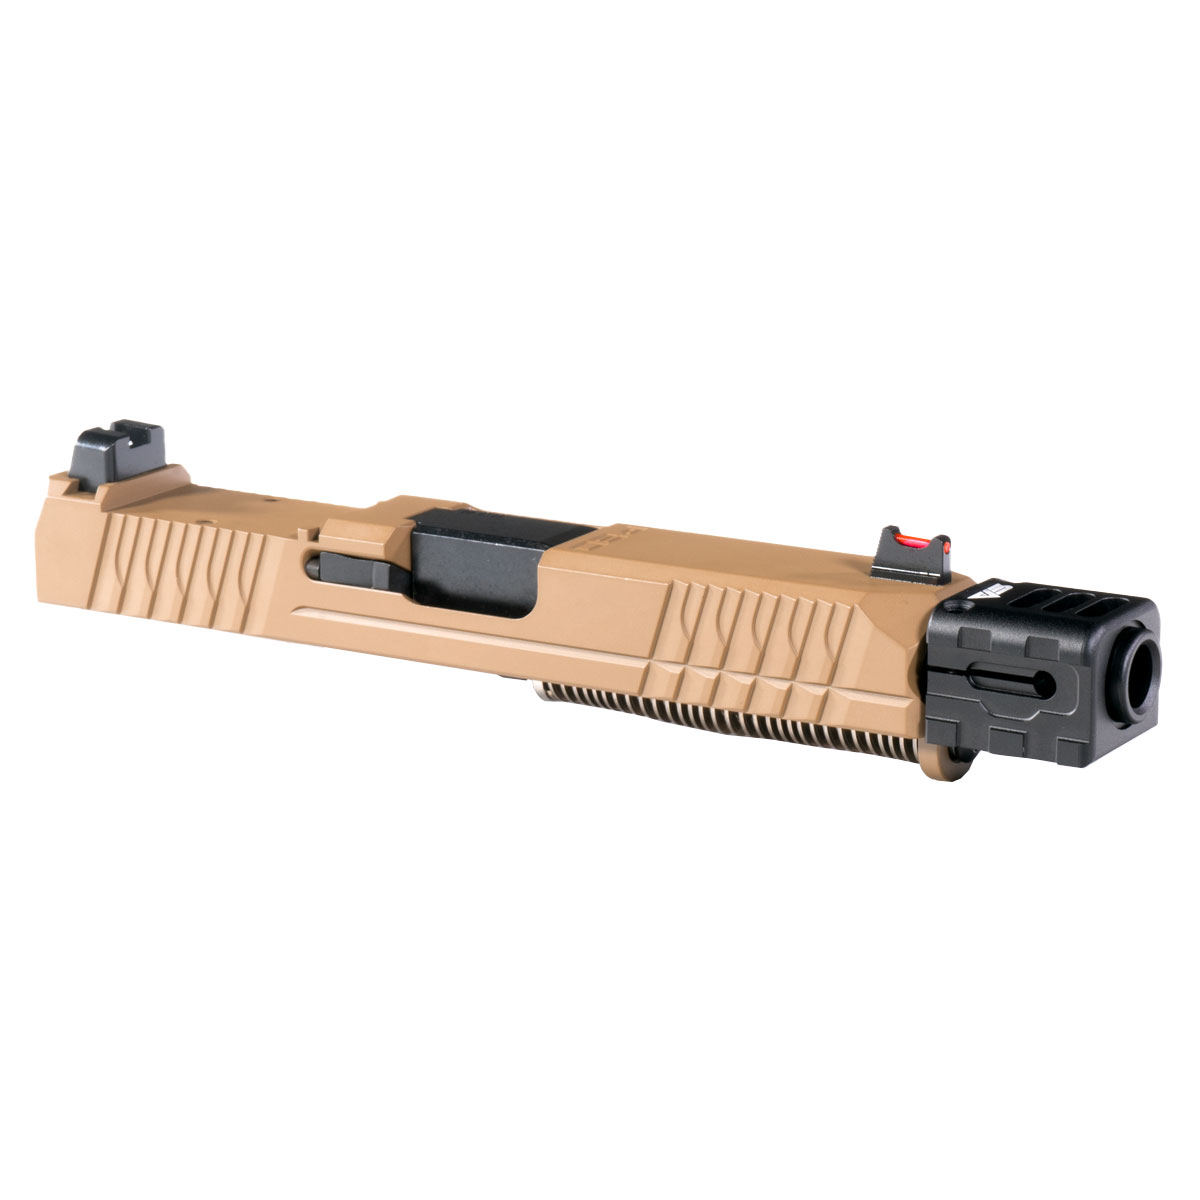 DD 'Sae' 9mm Complete Slide Kit - Glock 19 Gen 1-3 Compatible